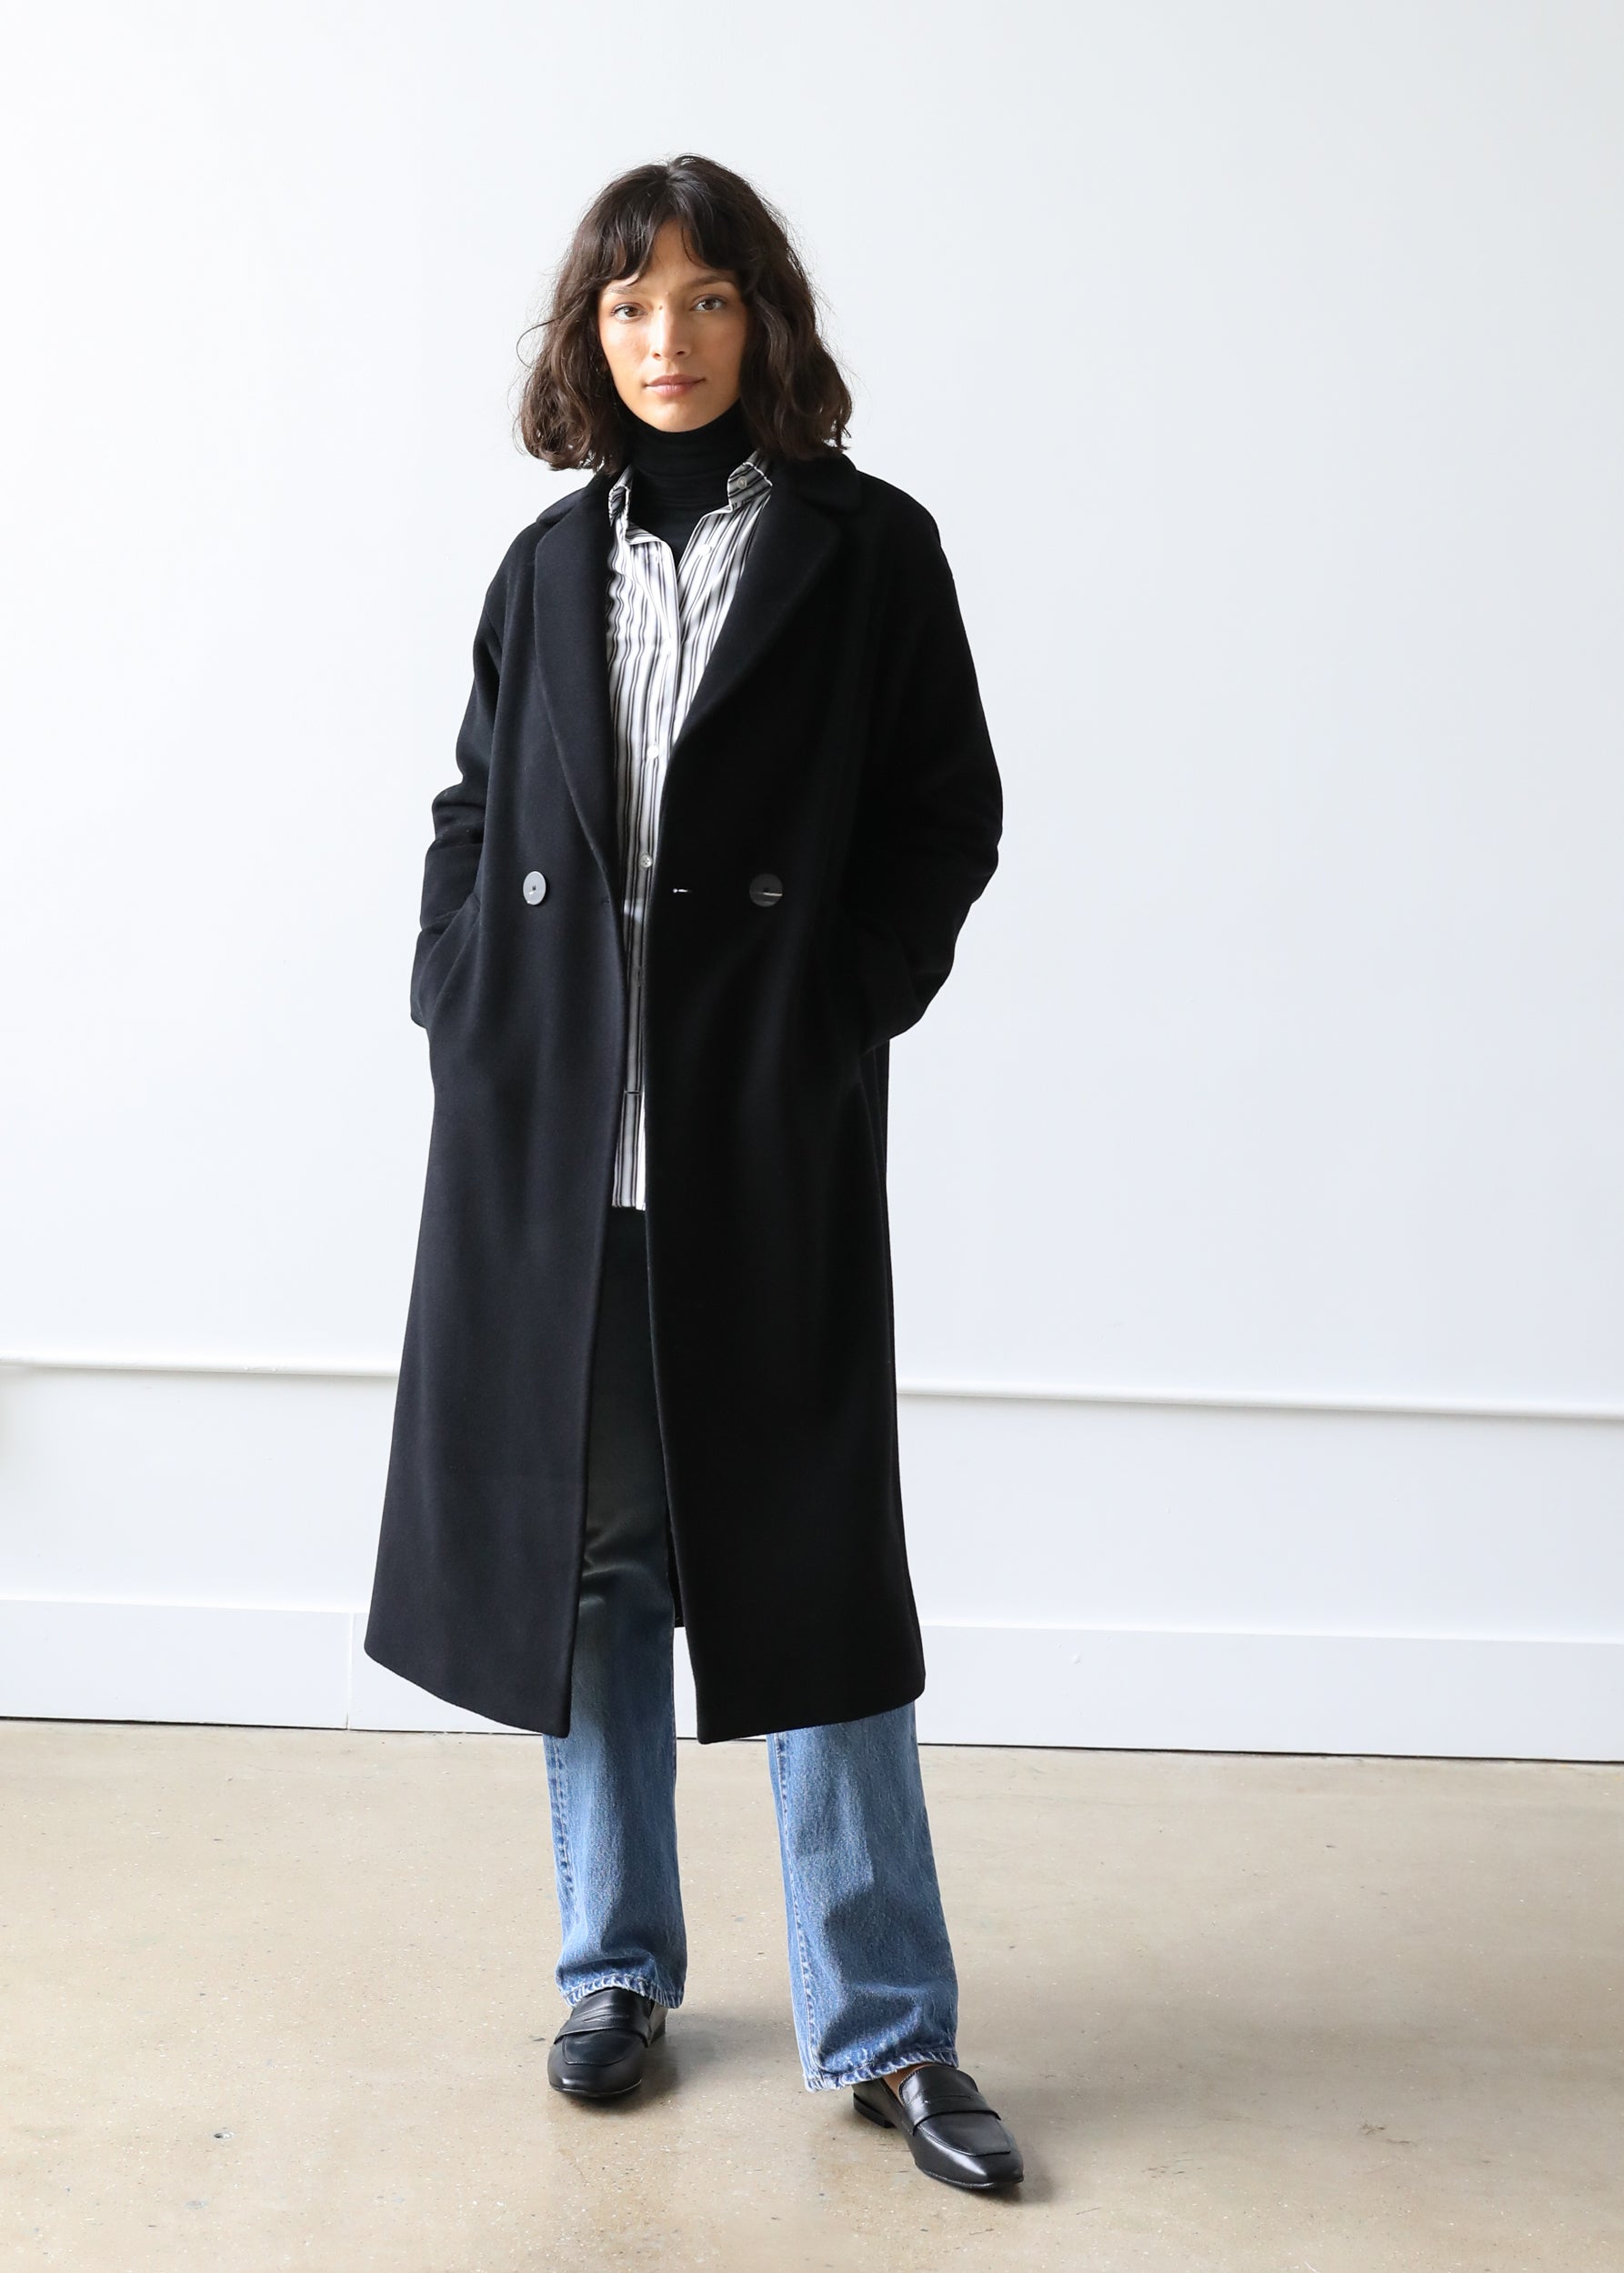 Estella NYC Liya Coat in Black Virgin Wool